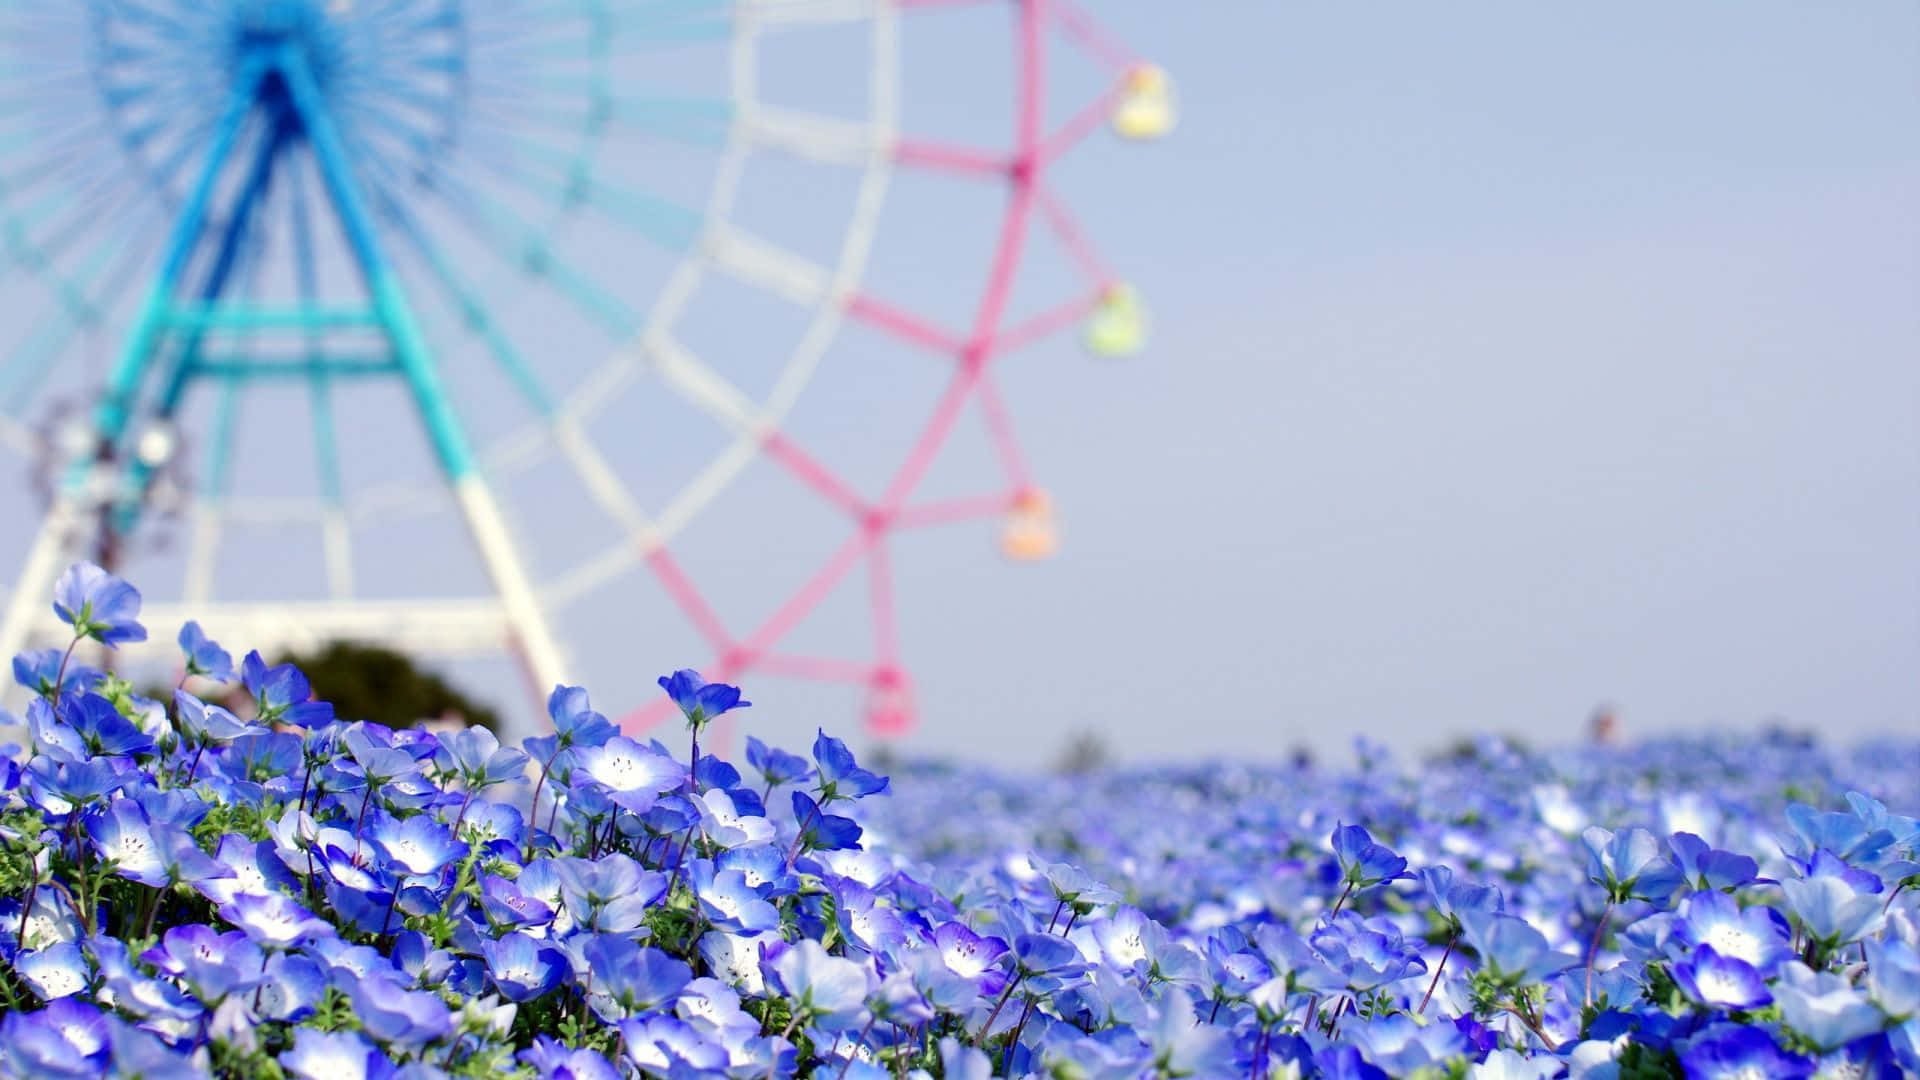 Einriesenrad Steht Inmitten Von Blauen Blumen. Wallpaper